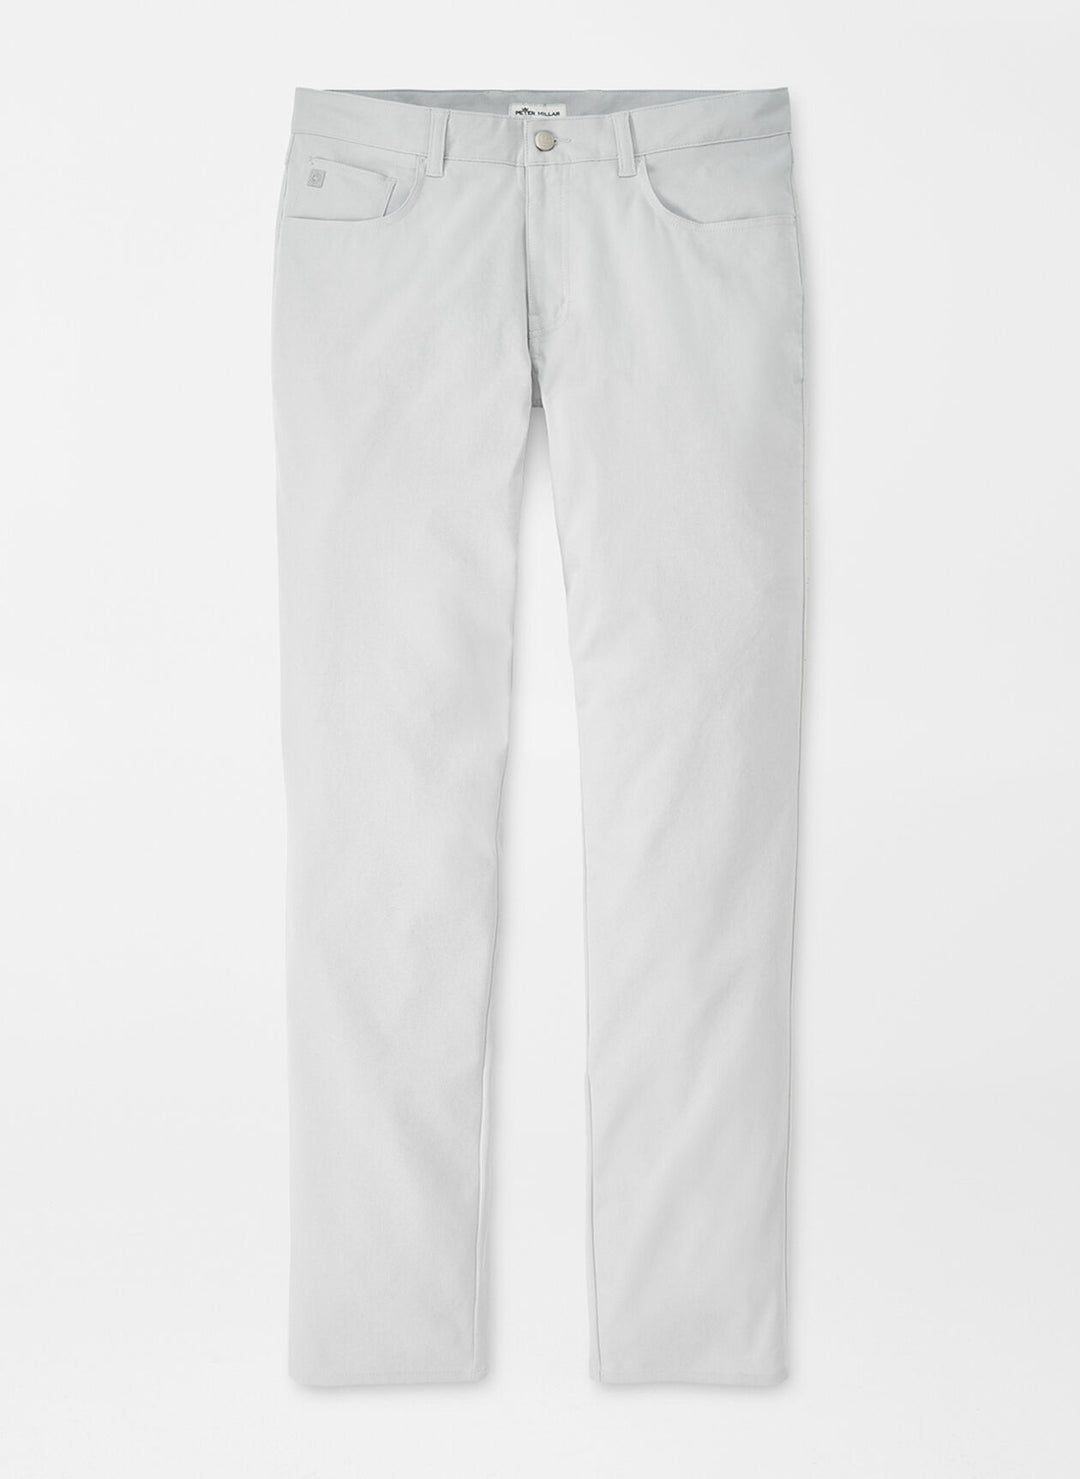 Peter Millar eb66 Performance Five-Pocket Pant In British Grey